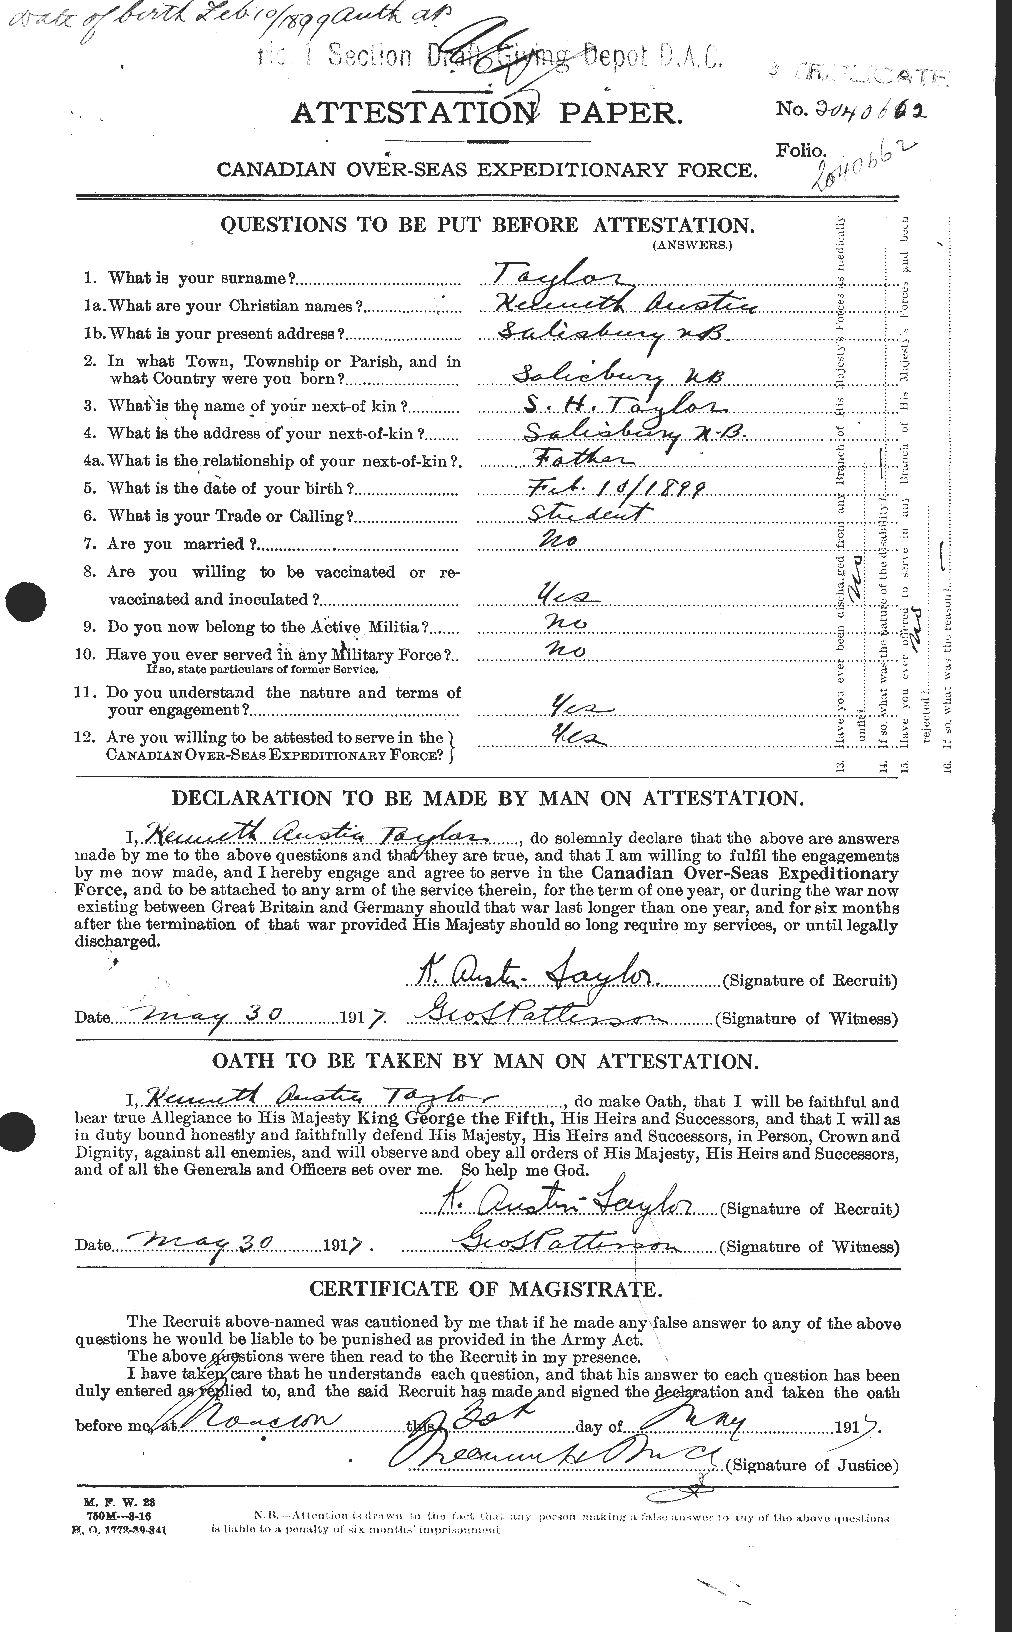 Dossiers du Personnel de la Première Guerre mondiale - CEC 627595a